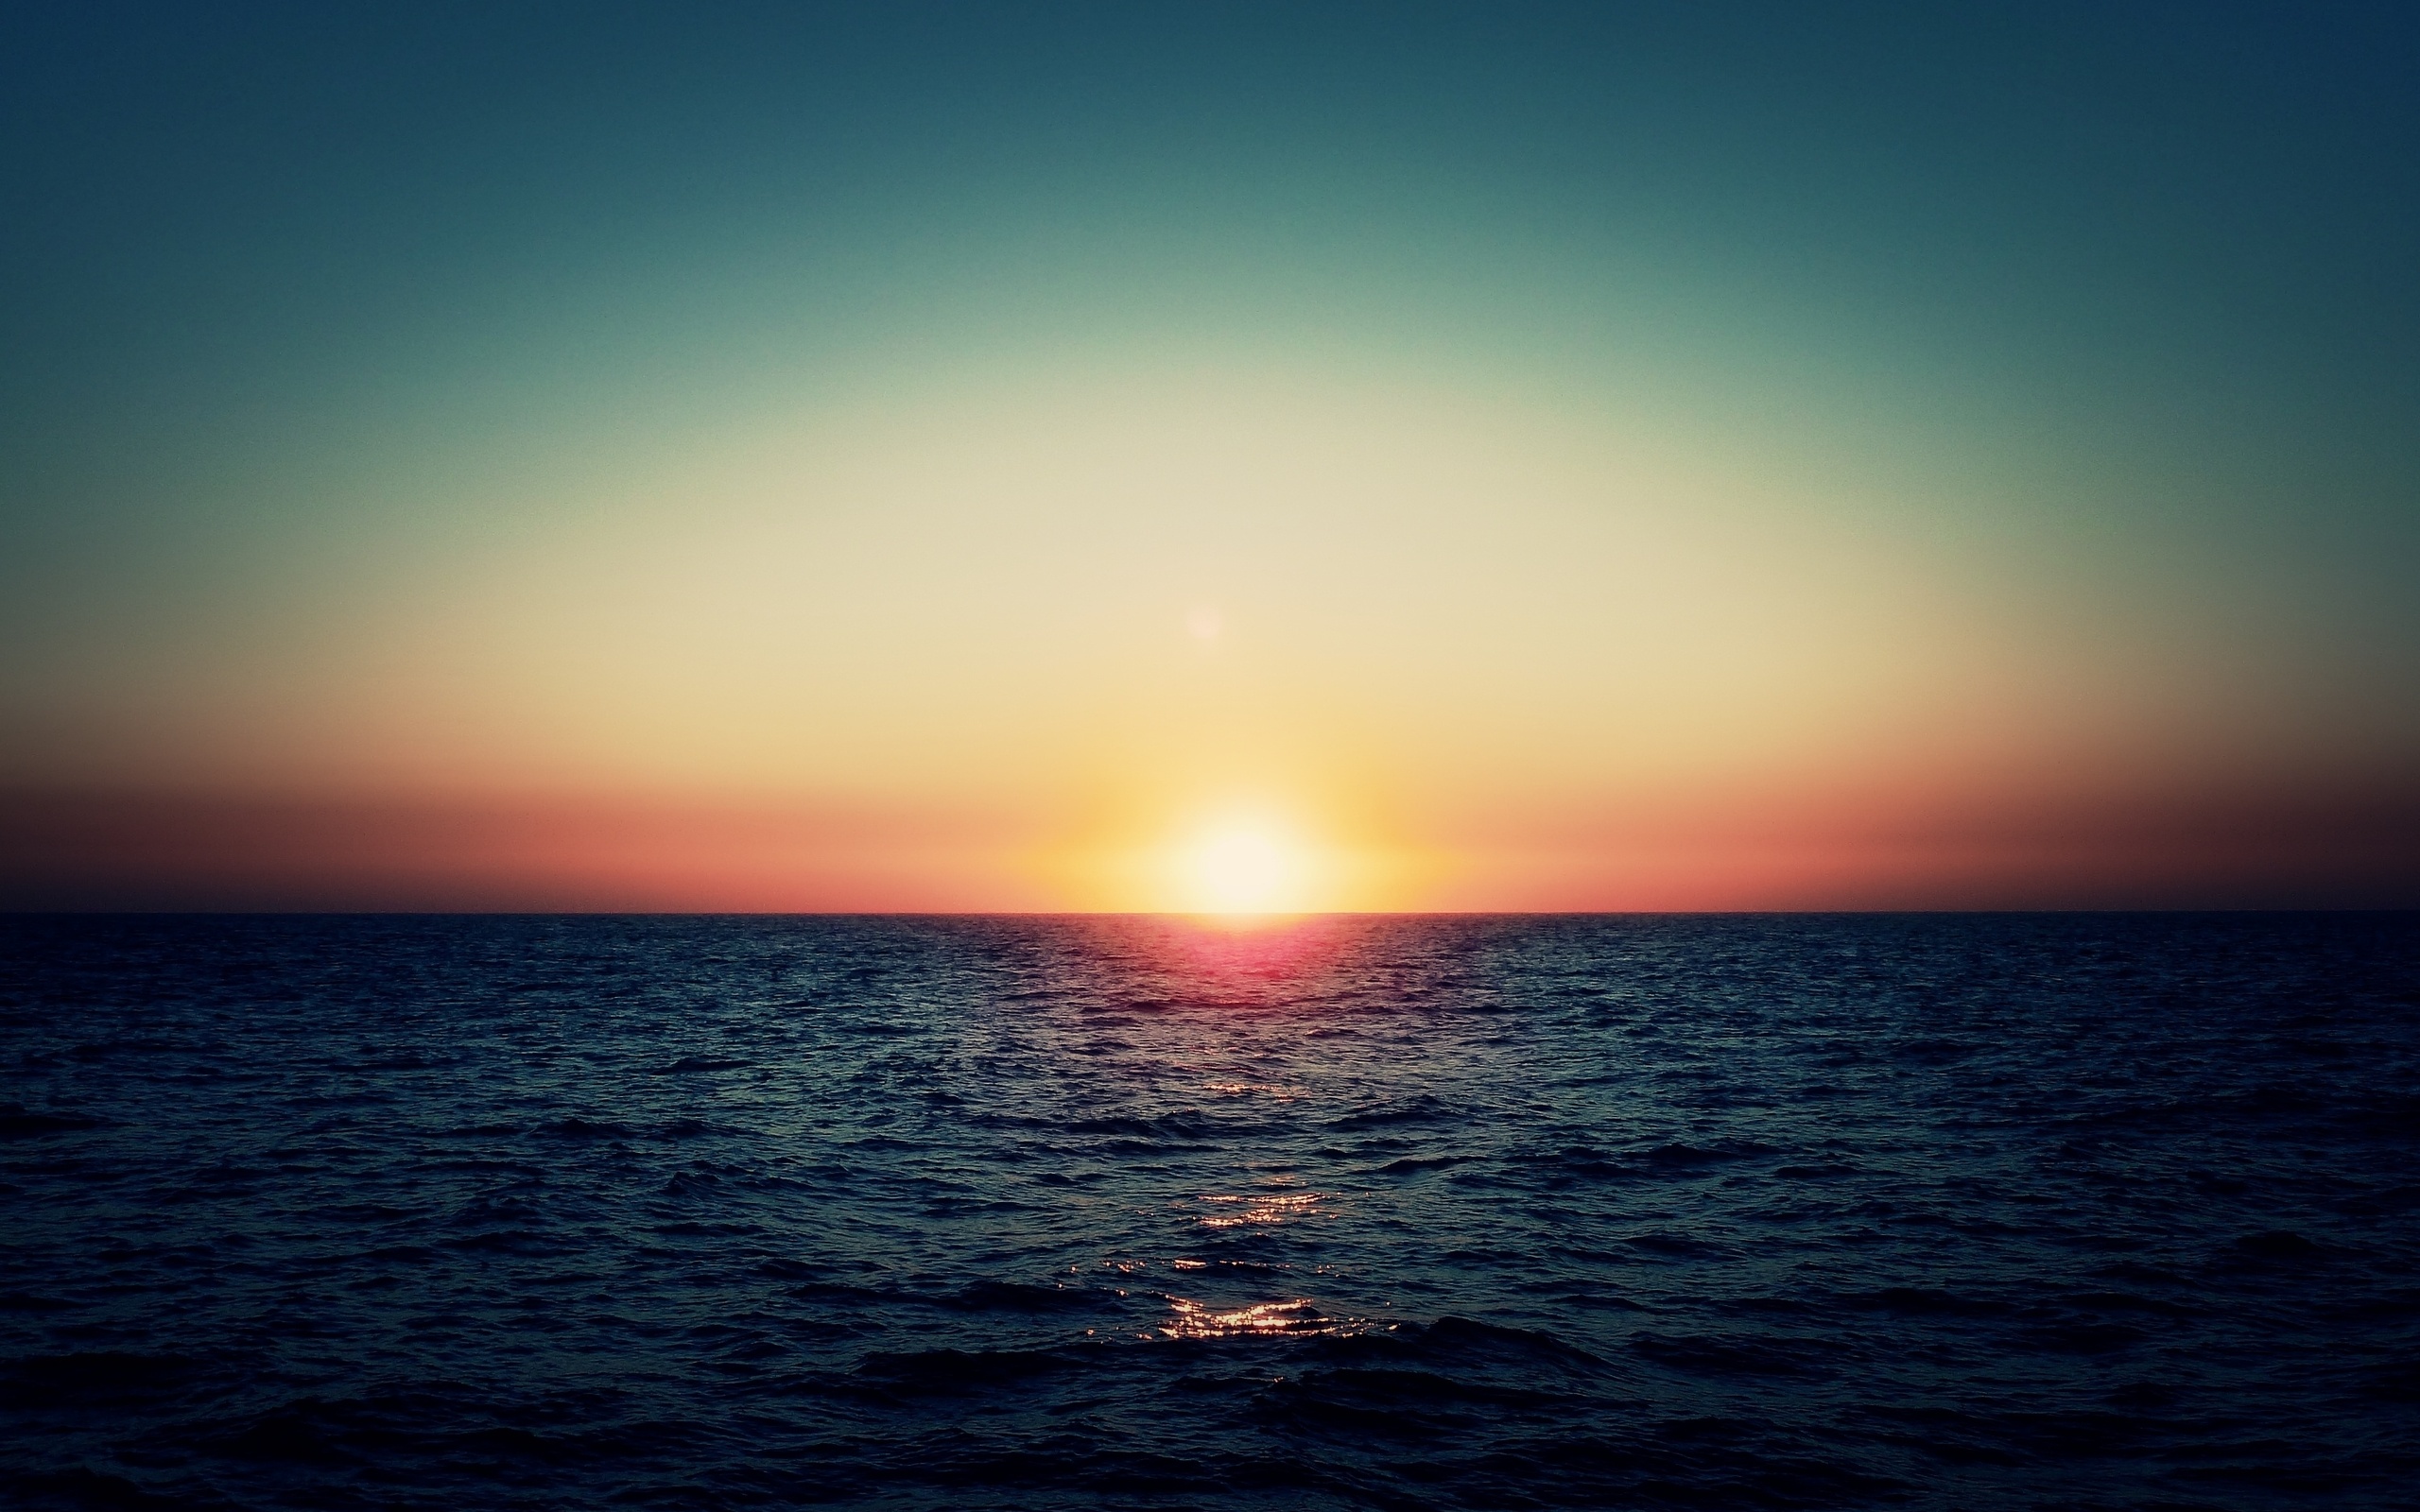 دانلود تصویر خاص و چشمگیر غروب آفتاب در دریا 